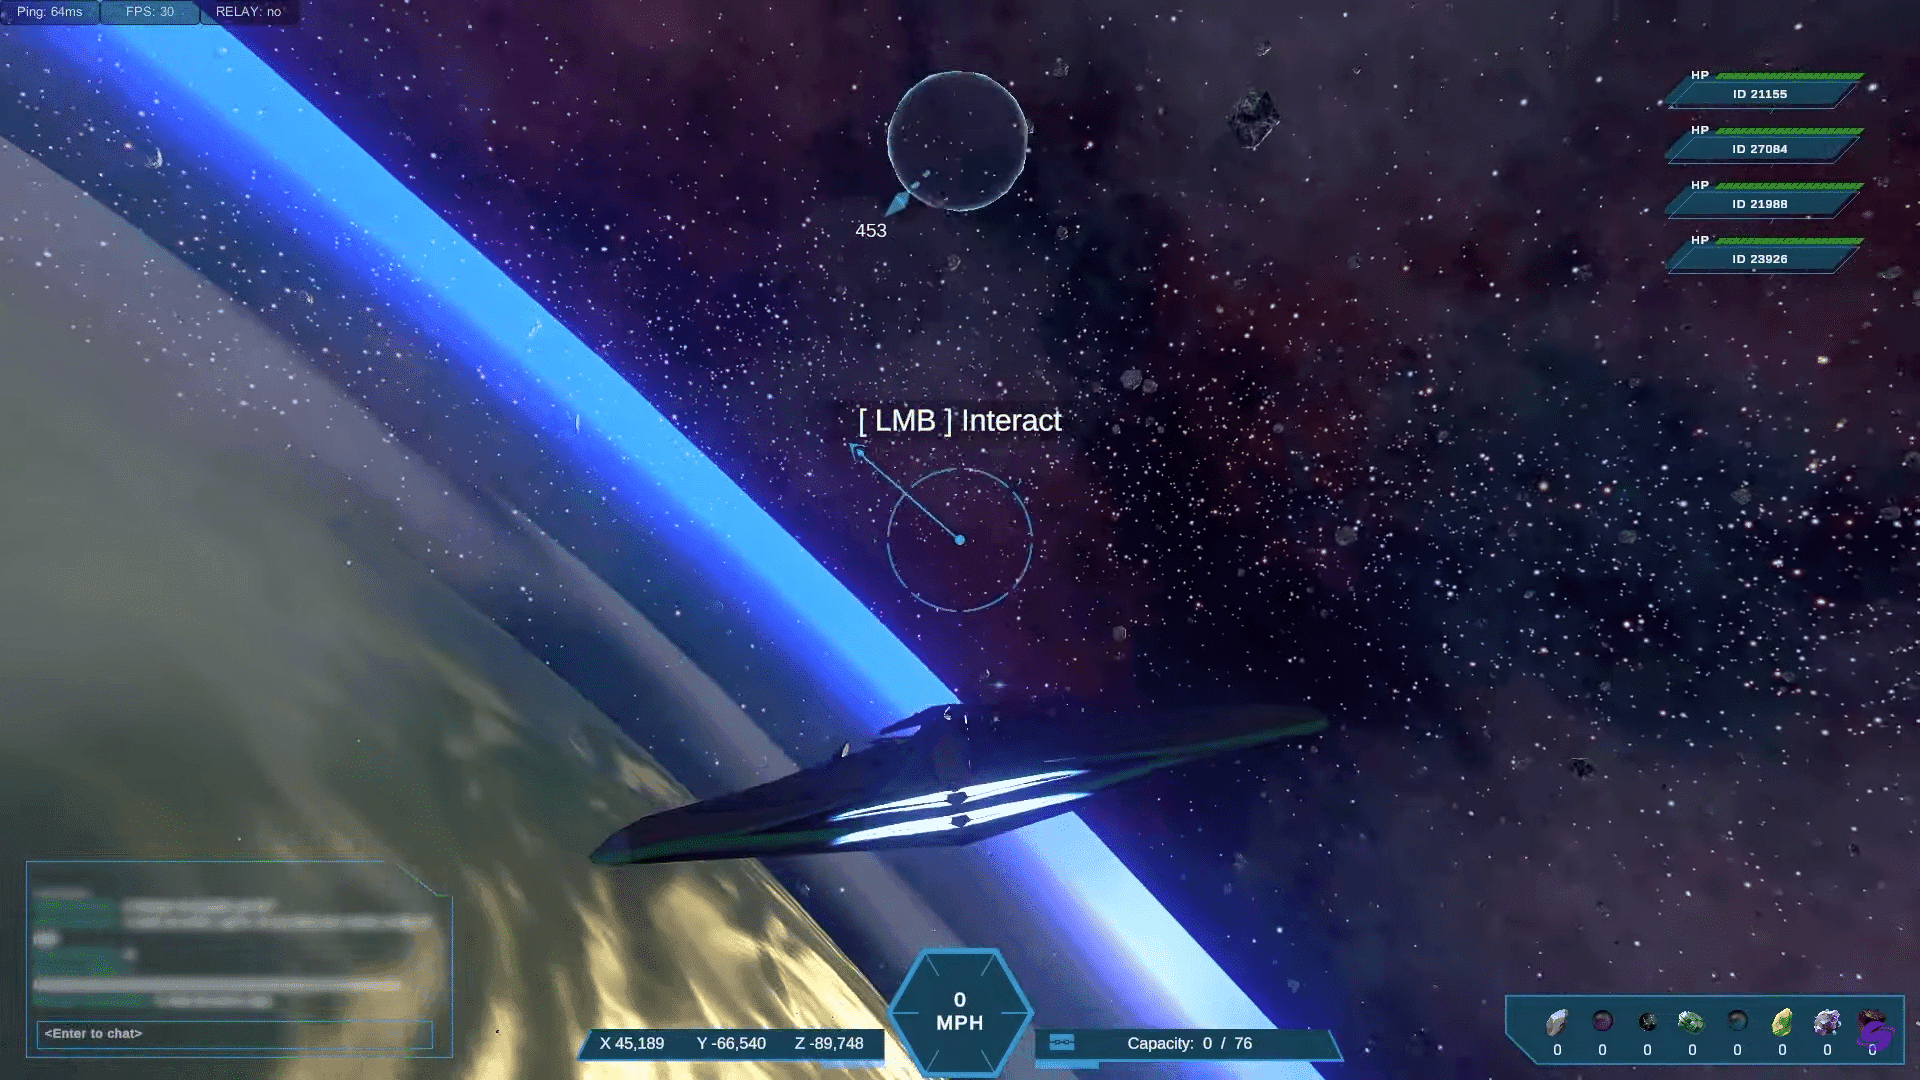 DeepSpace, um metaverso espacial baseado em blockchain, o jogo para ganhar. Os jogadores criam civilizações, conquistam territórios, aventuram-se em reinos cósmicos.